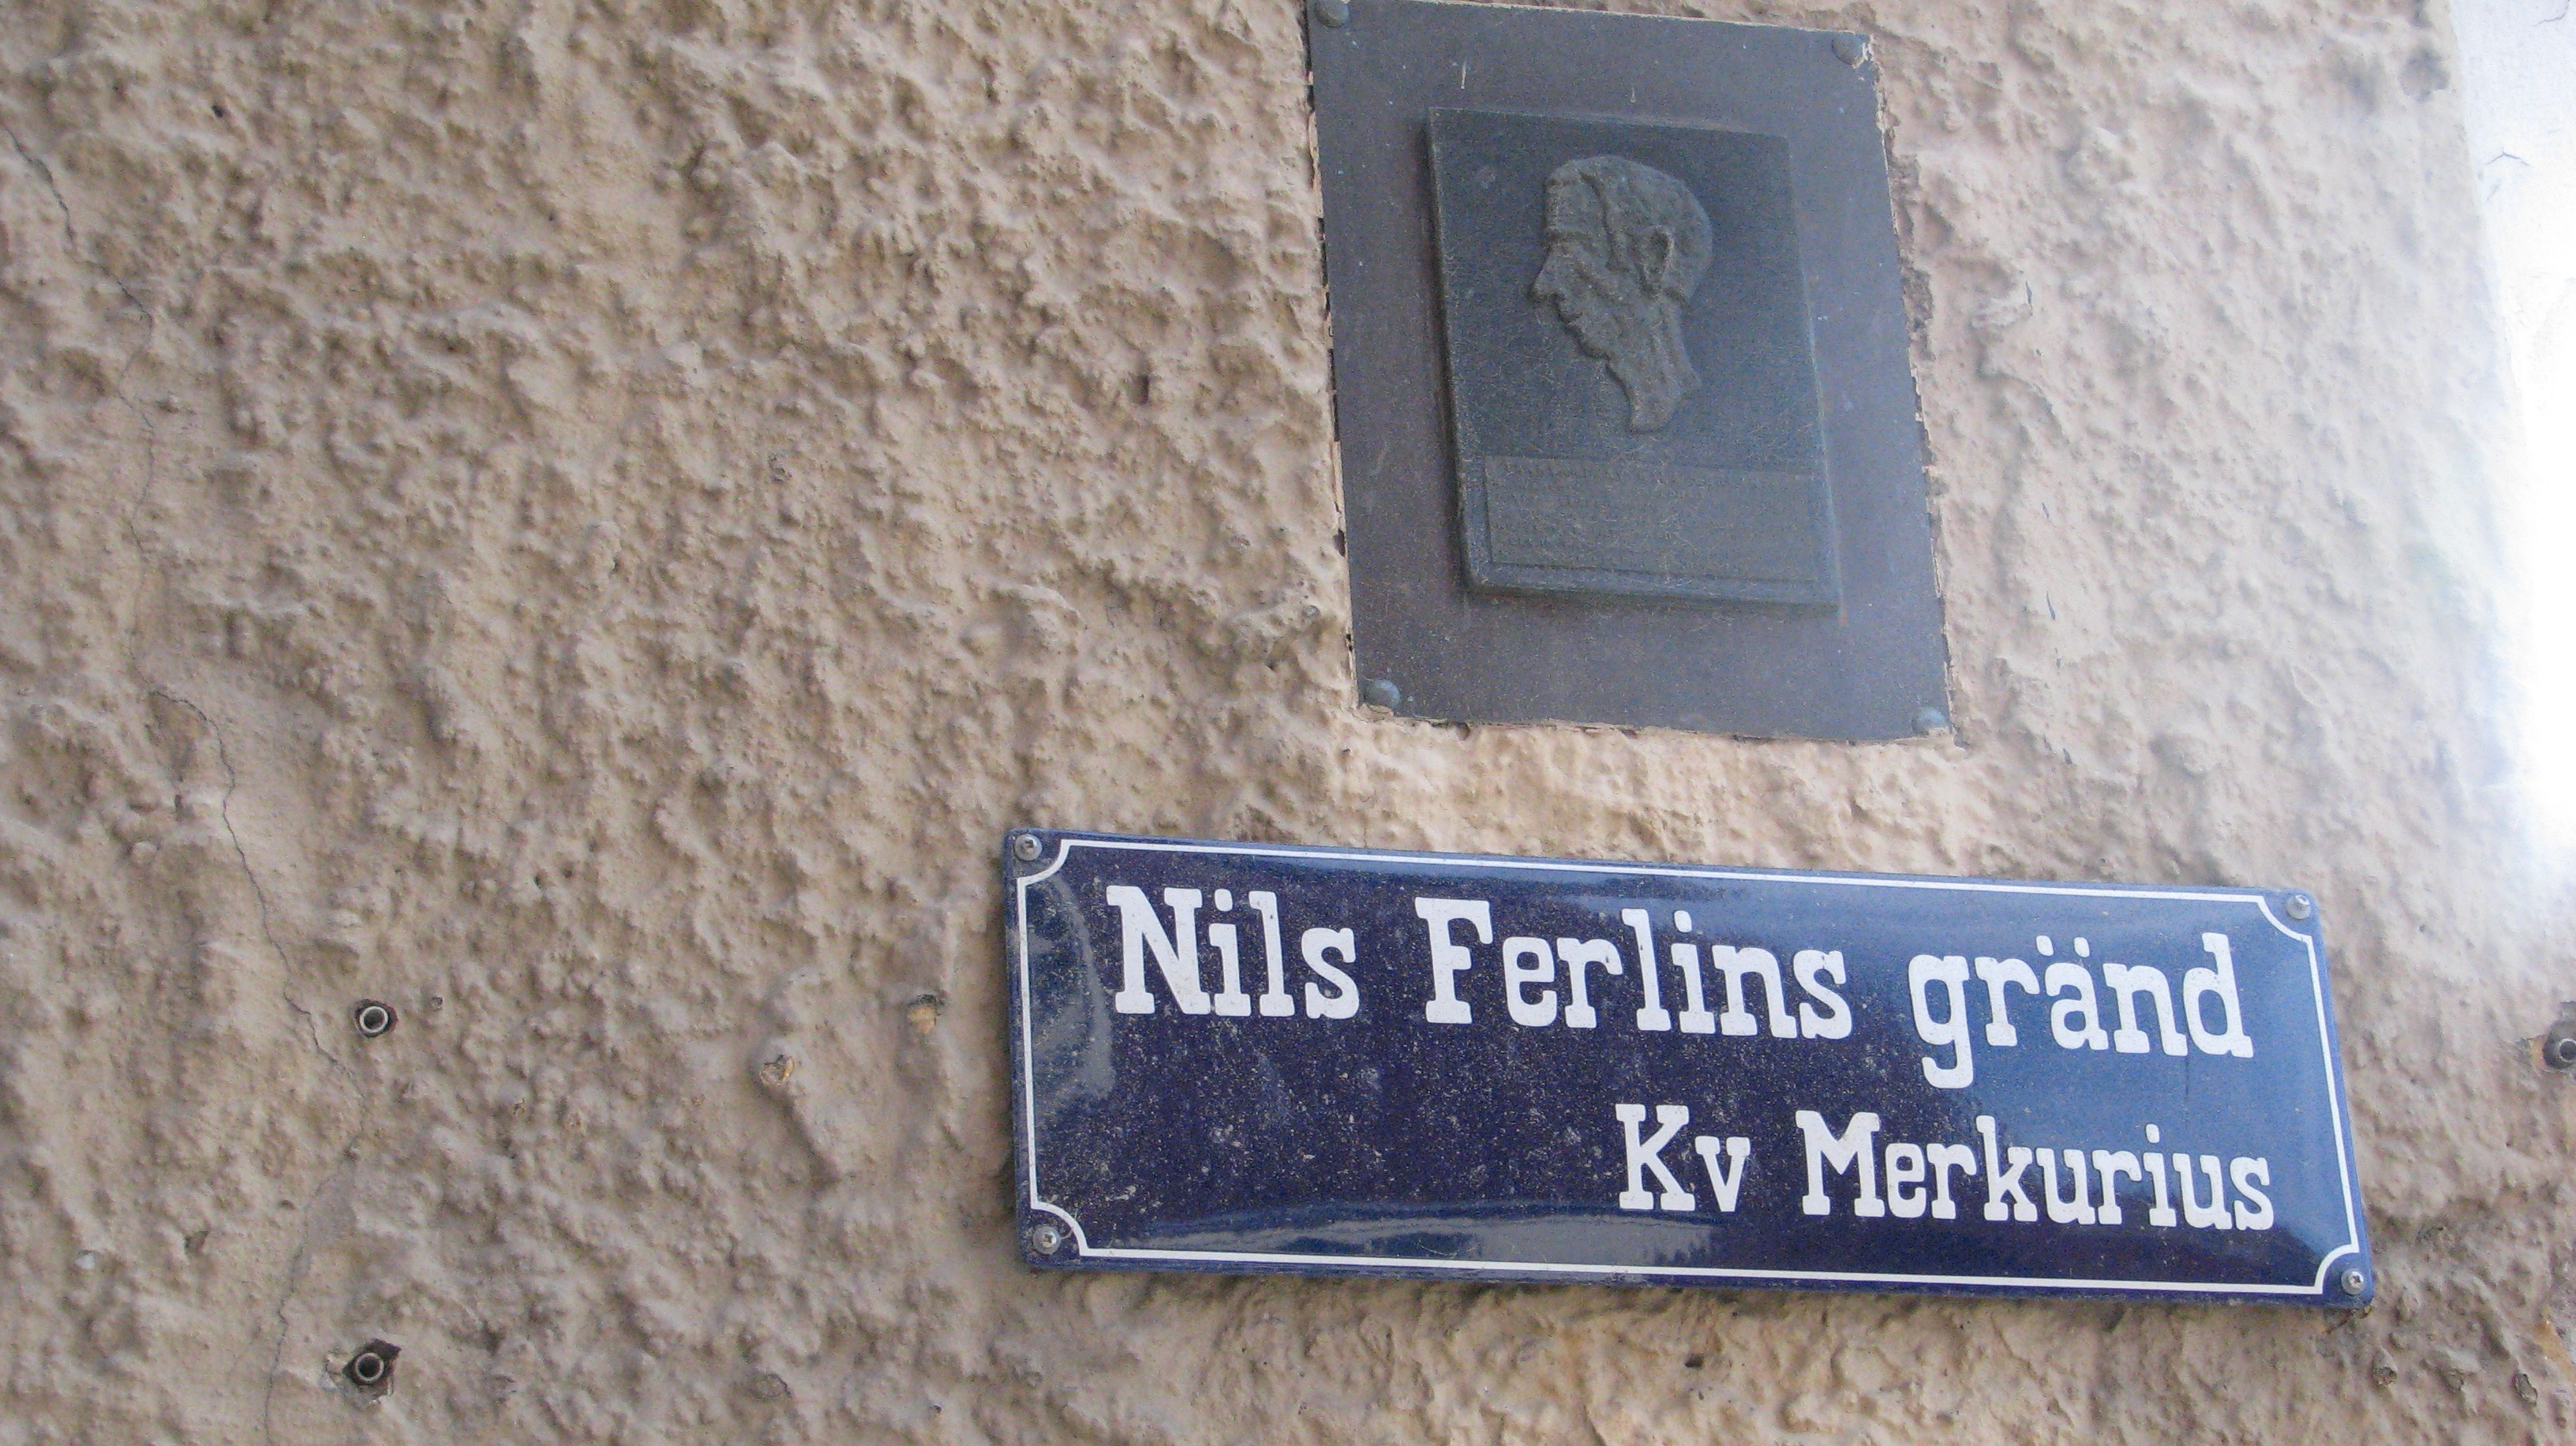 Nils Ferlin har sin egen gränd intill Norrtäljeån.